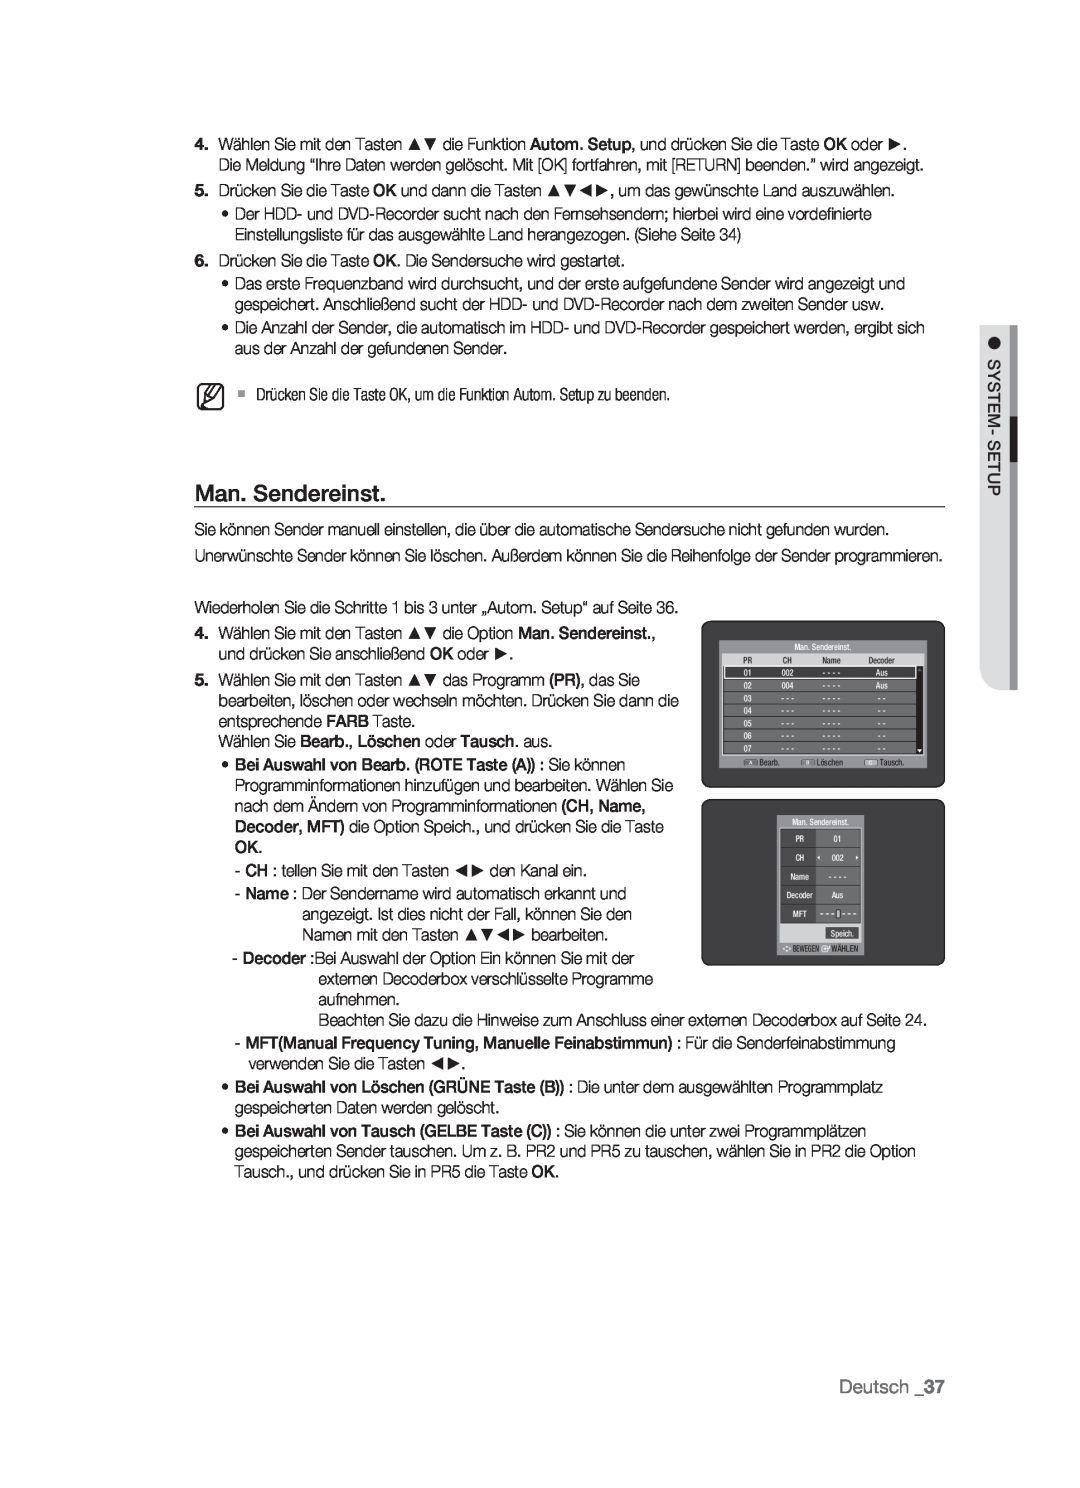 Samsung DVD-HR773/XEB, DVD-HR773/XEN, DVD-HR773/XEG, DVD-HR773/AUS manual Man. Sendereinst, Deutsch 